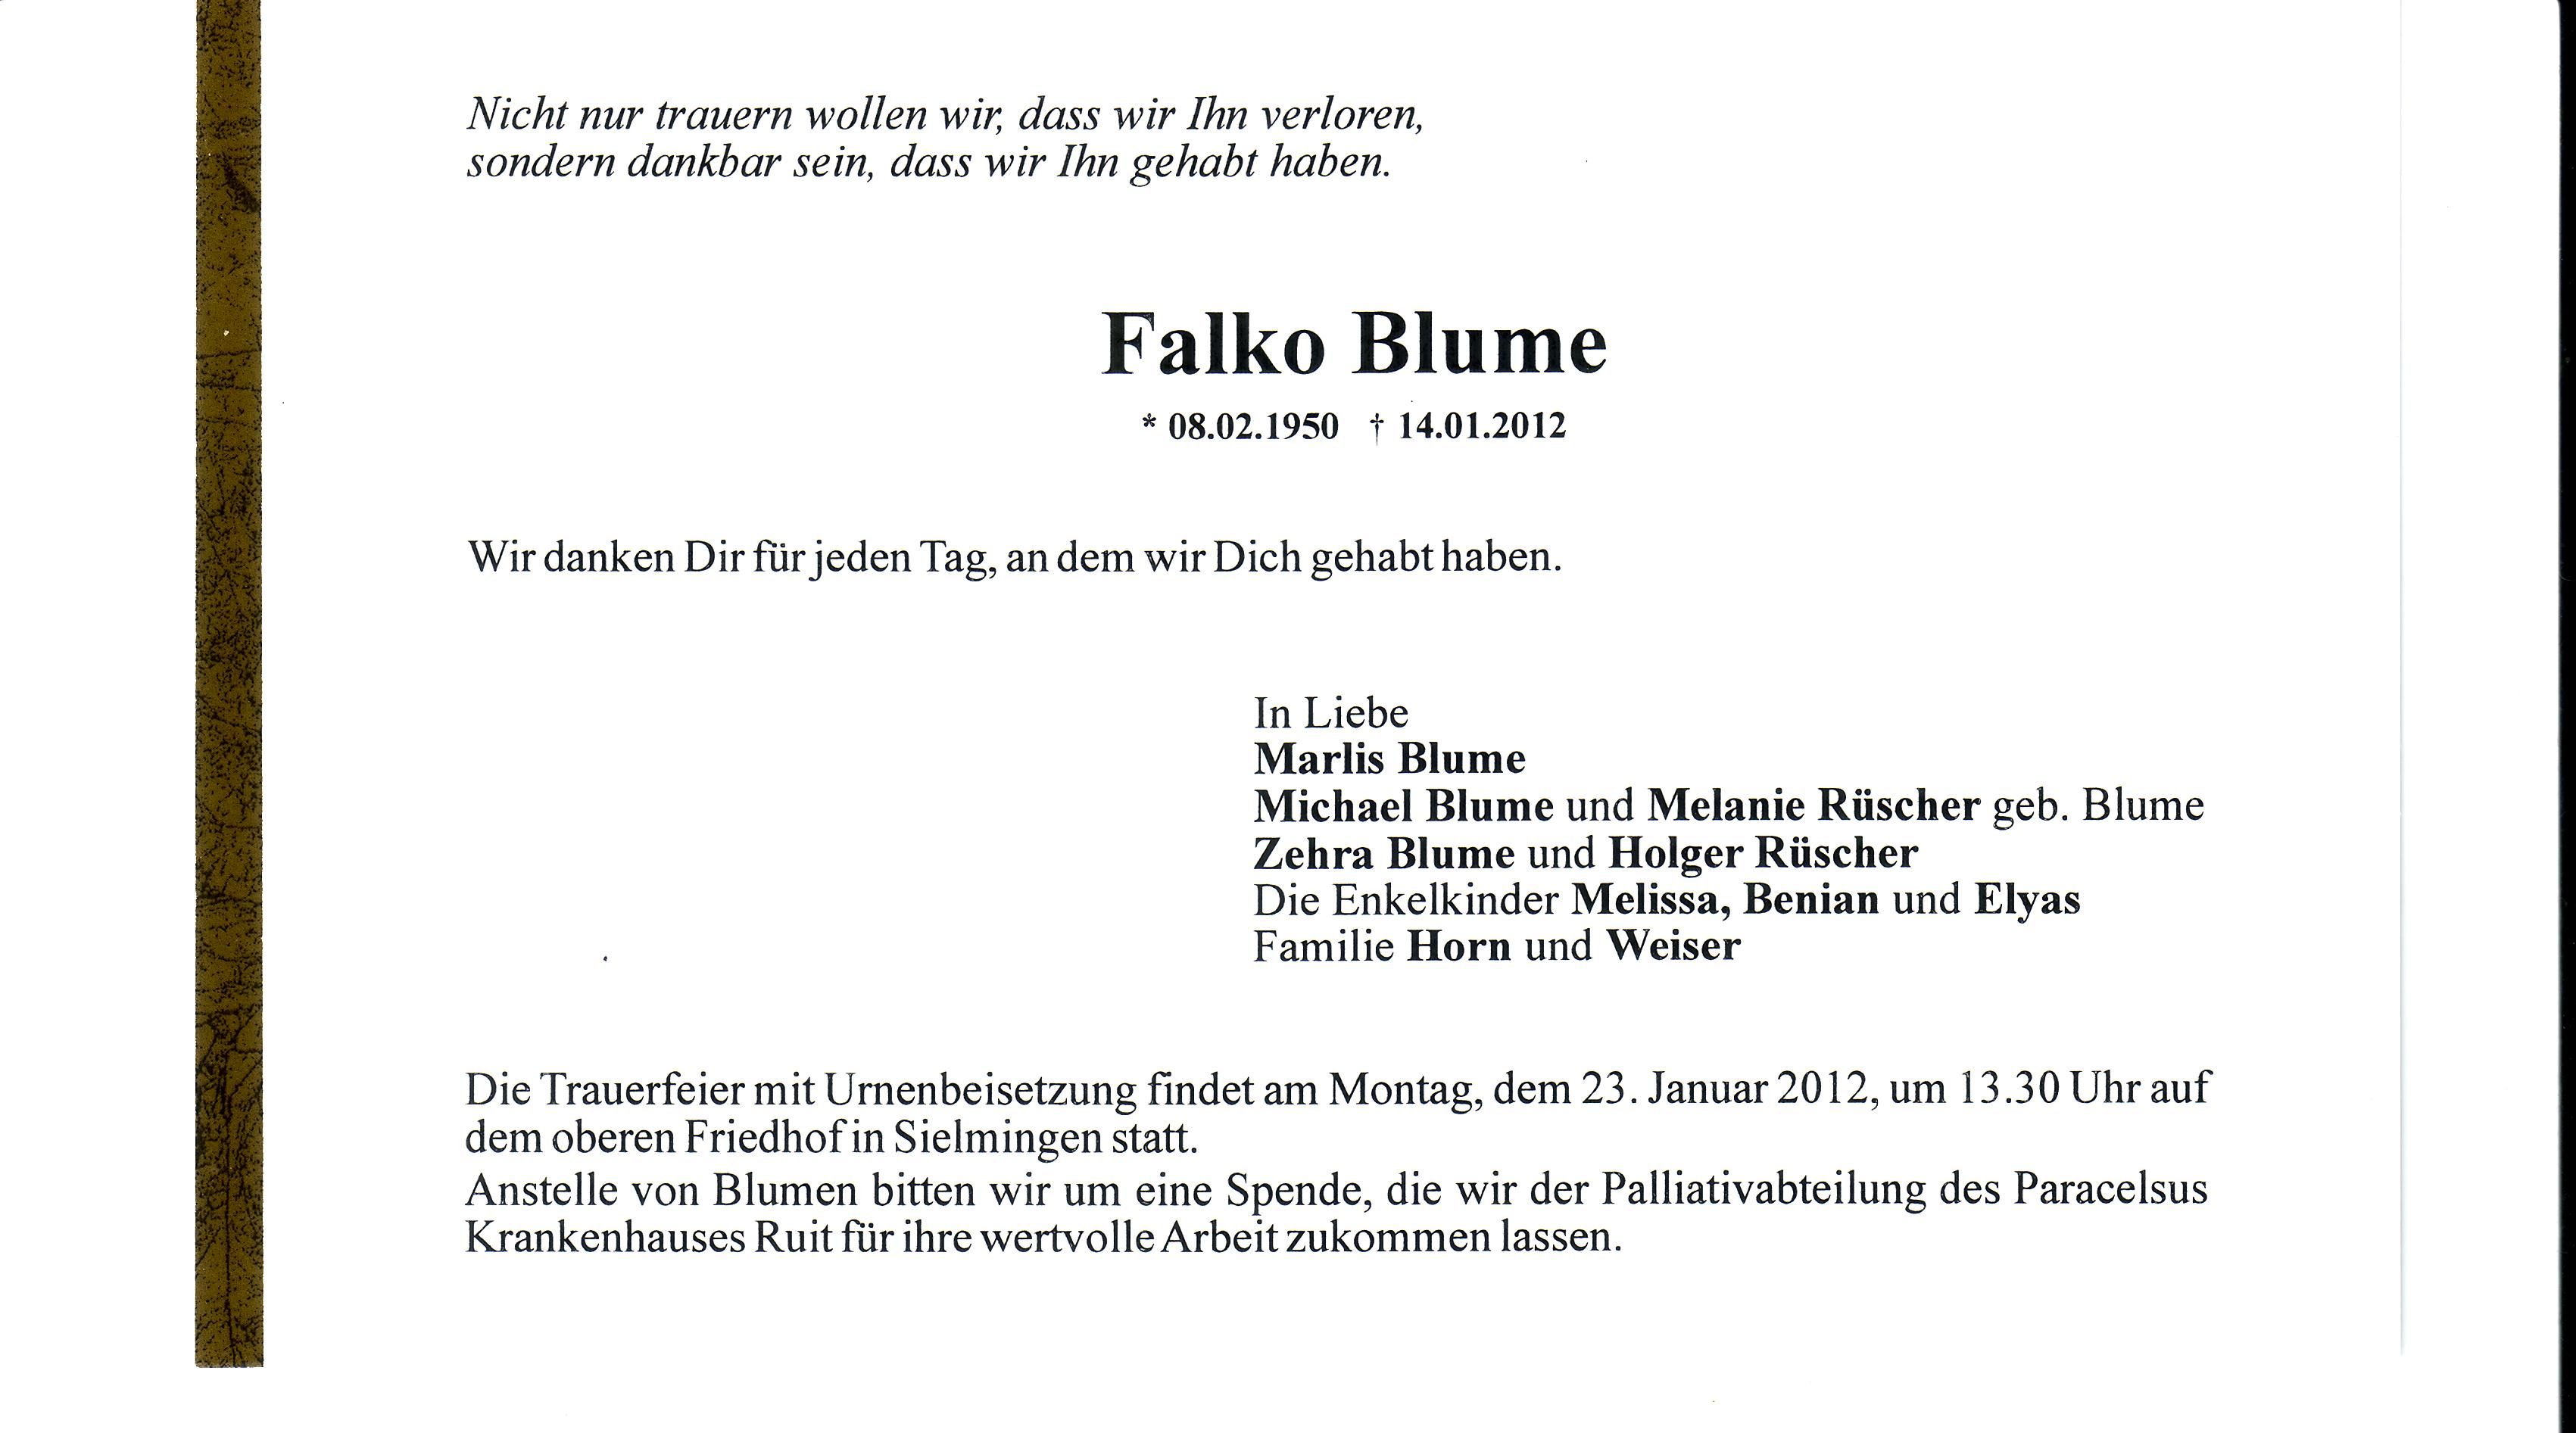 Todesanzeige Falko Blume, 2012